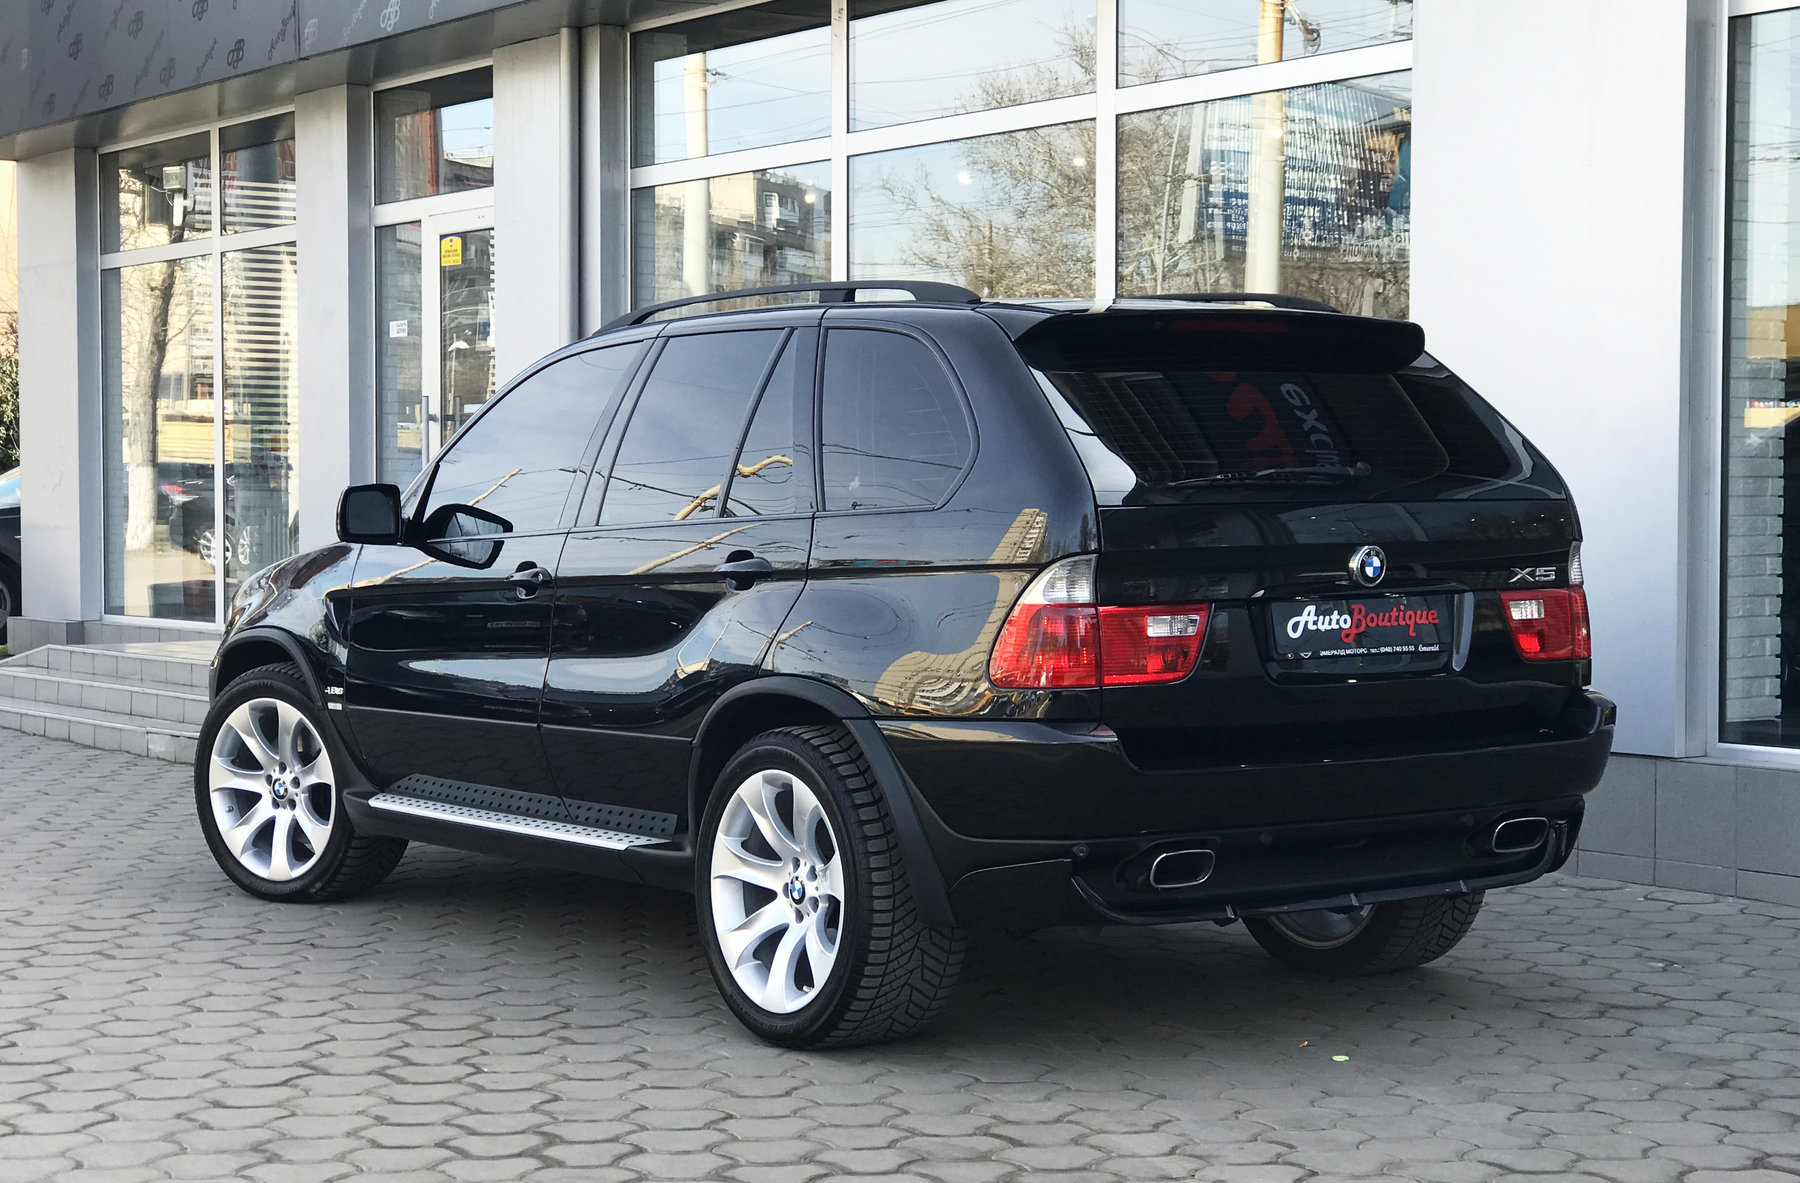 Бмв х5 е53 4.8. BMW x5 2004 4.8. X5 BMW x5 2005. BMW x5 2005 черный.